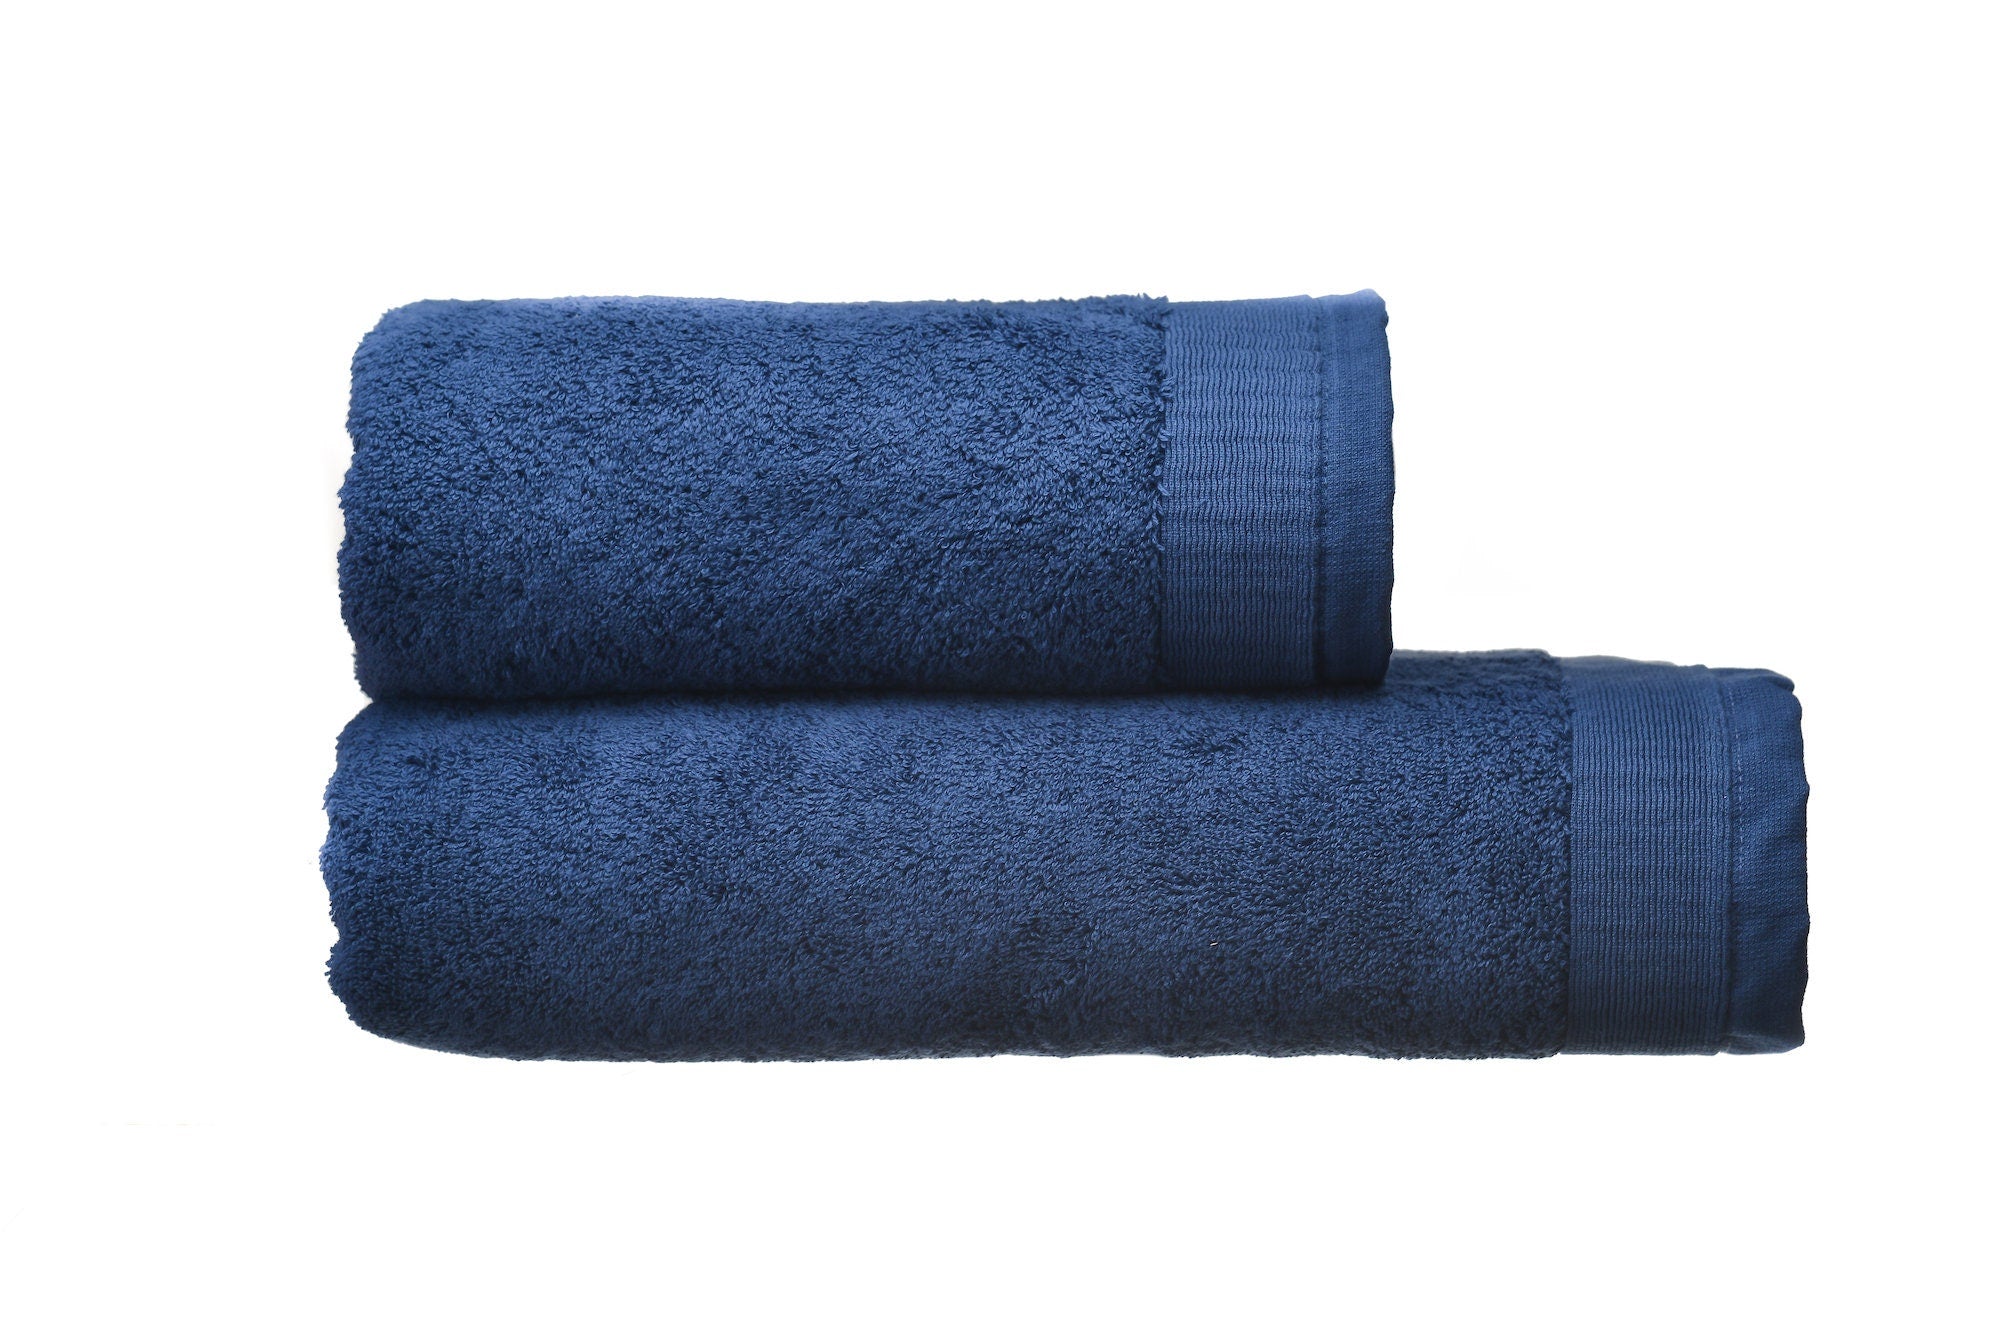 Premium Turkish Bath Towel Set 600 grm, 2 Pieces Set: Bath and Face Towel, 100% Natural Terry Cotton, Soft Touch, Super Absorbent